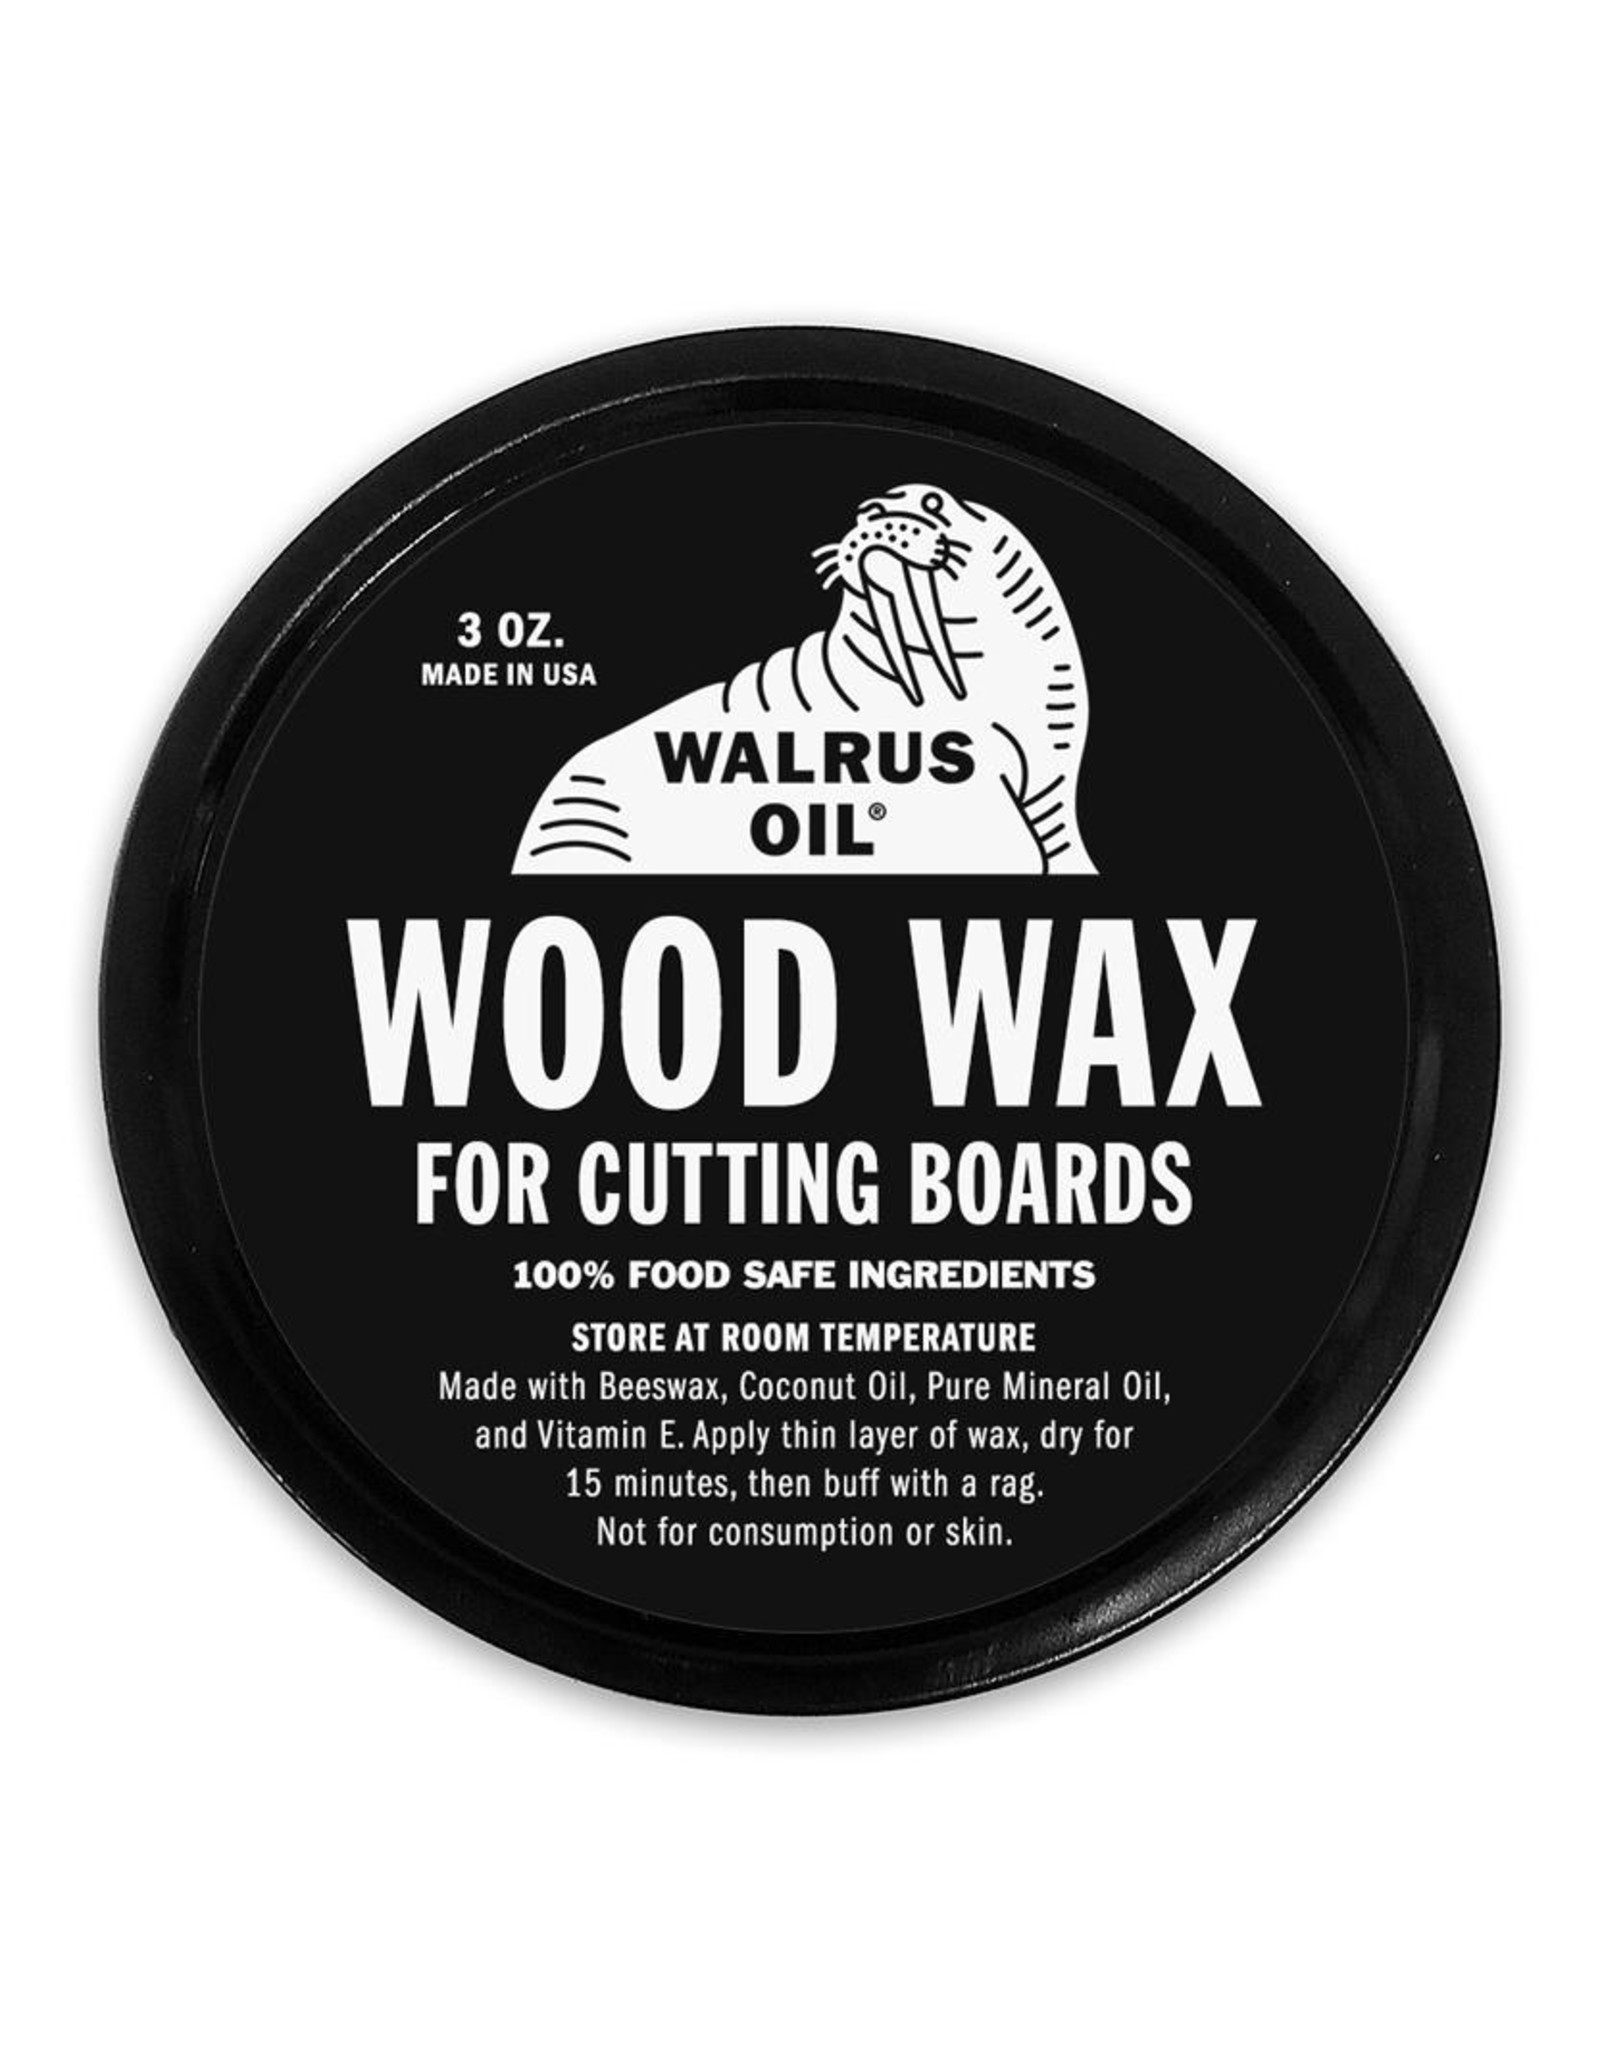 Walrus Oil Wood Wax for Cutting Boards, 3 oz